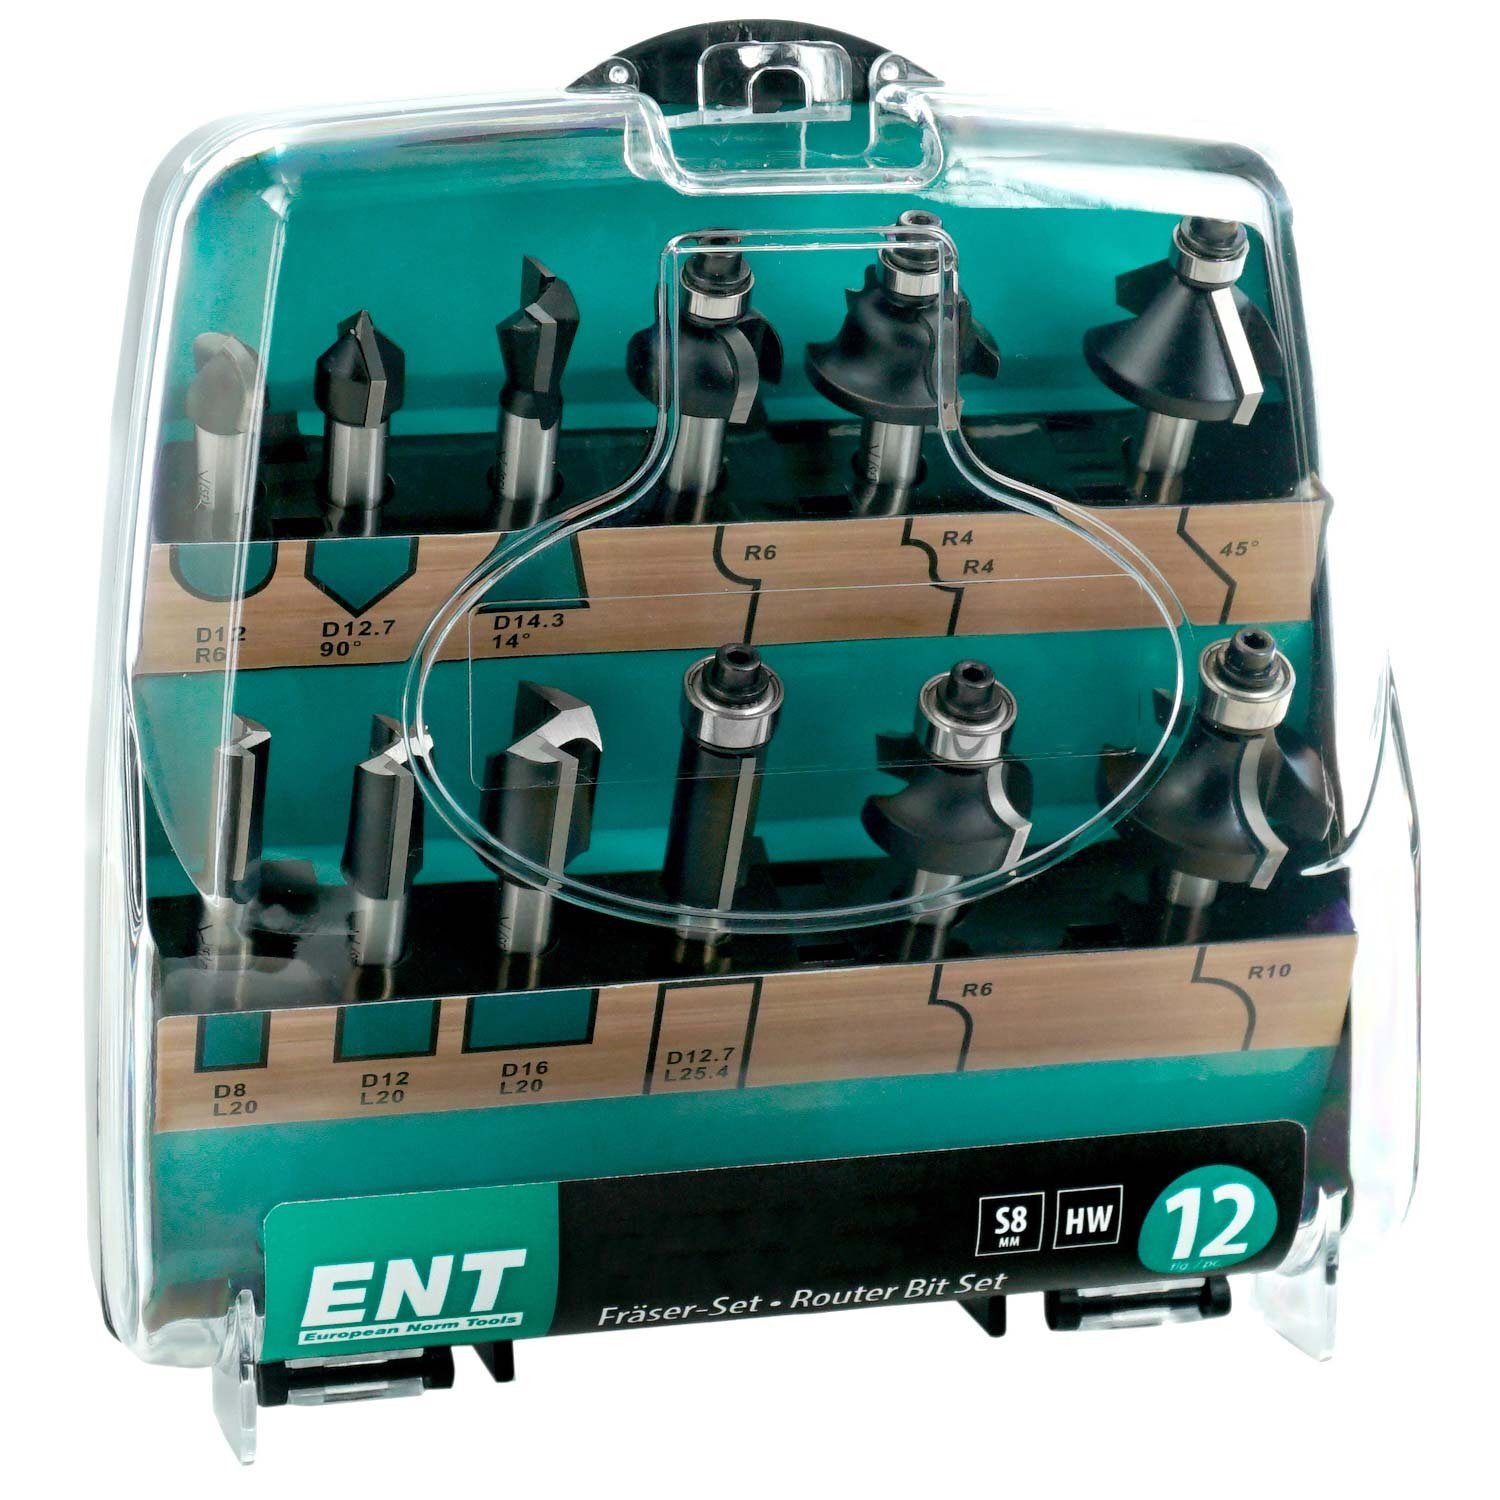 ENT European Hartmetall Tools Fräsbohrer 09012 hochwertige (in 12-tlg. Schaft Norm Kunststoffkassette), 8mm, die mit Fräserset Grundausstattung